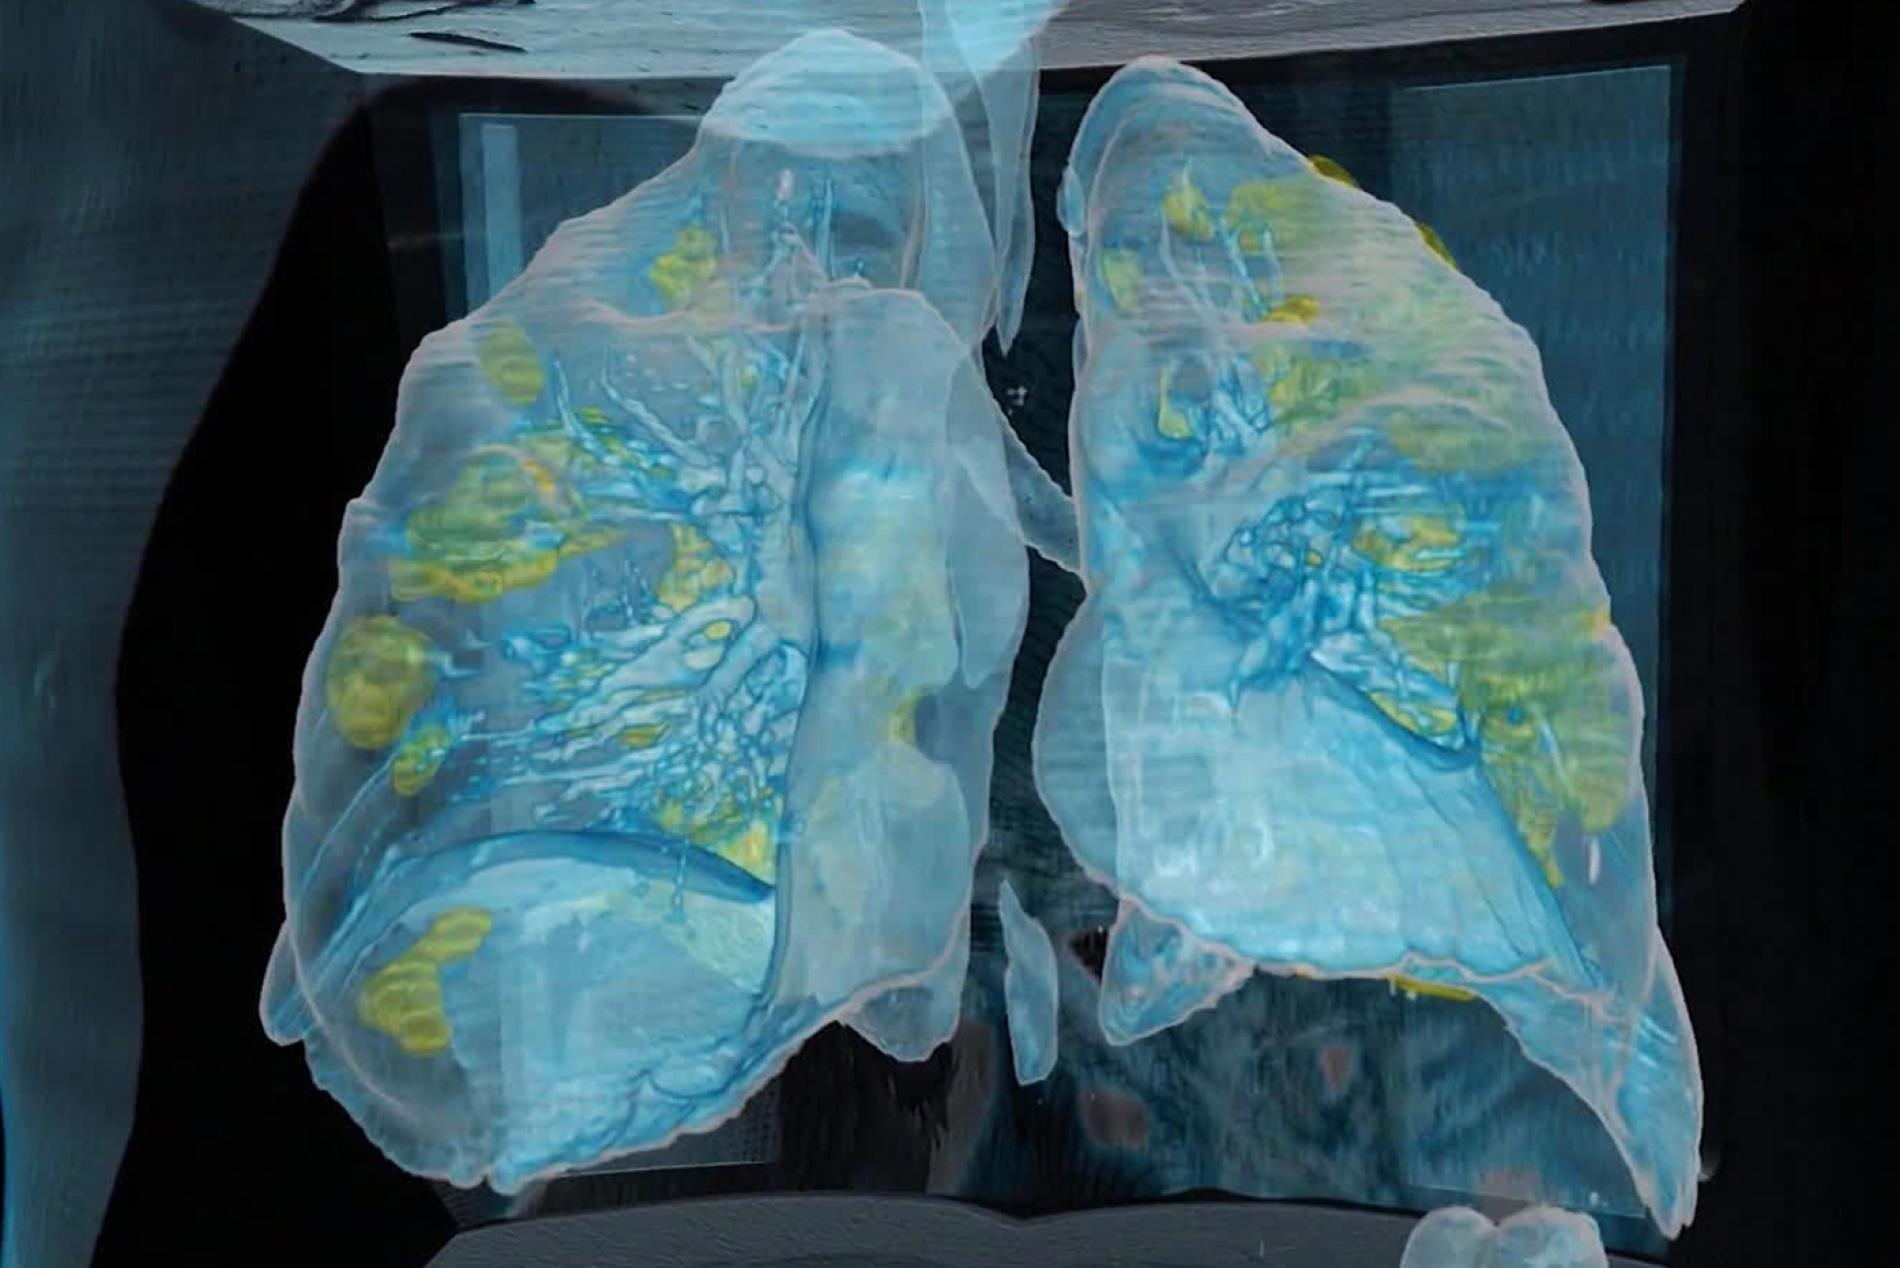 美國喬治華盛頓大學醫院（George Washington University Hospital）有位59歲的男性患者死於COVID-19，從這張以電腦斷層掃描製成的3D模型圖，可以看出患者的肺部有多處損傷（黃色區域）。PHOTOGRAPH COURTESY GEORGE WASHINGTON HOSPITAL AND SURGICAL THEATER